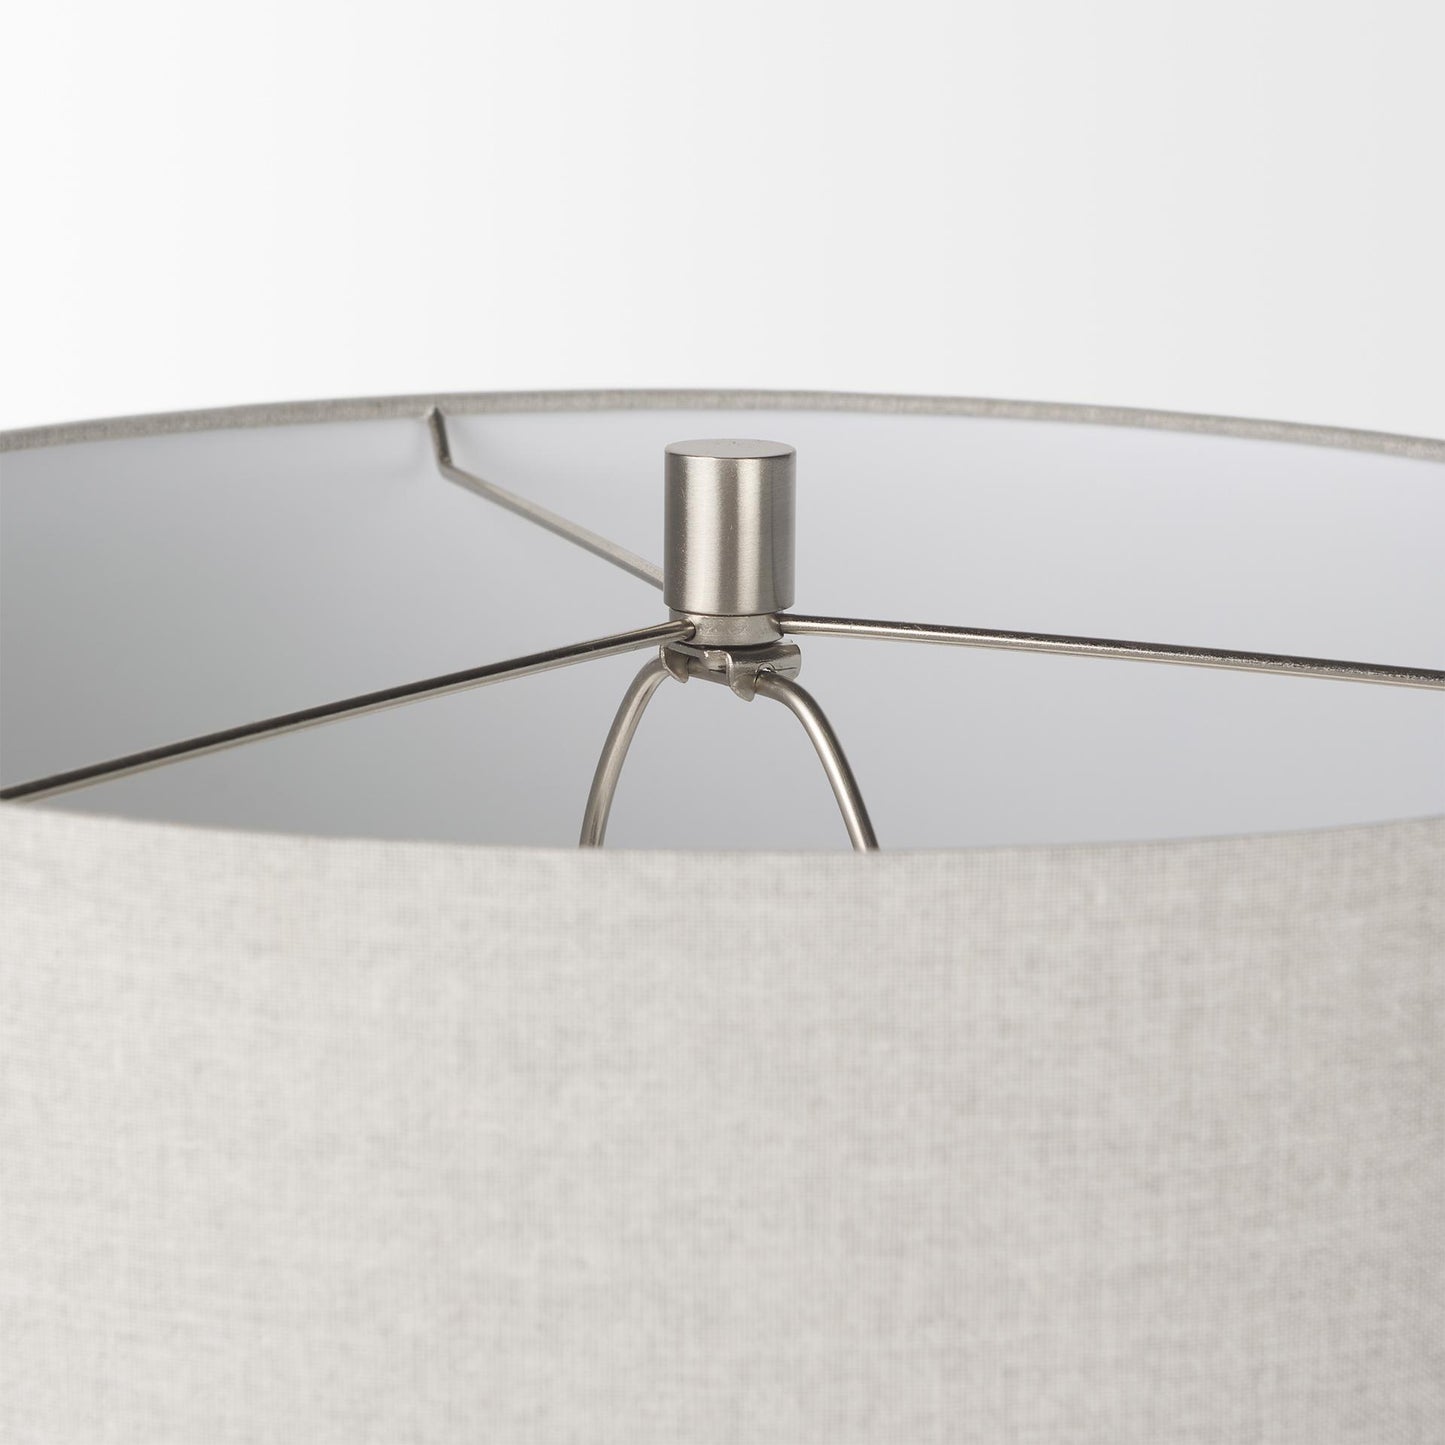 Piven Cream Textured Ceramic Table Lamp